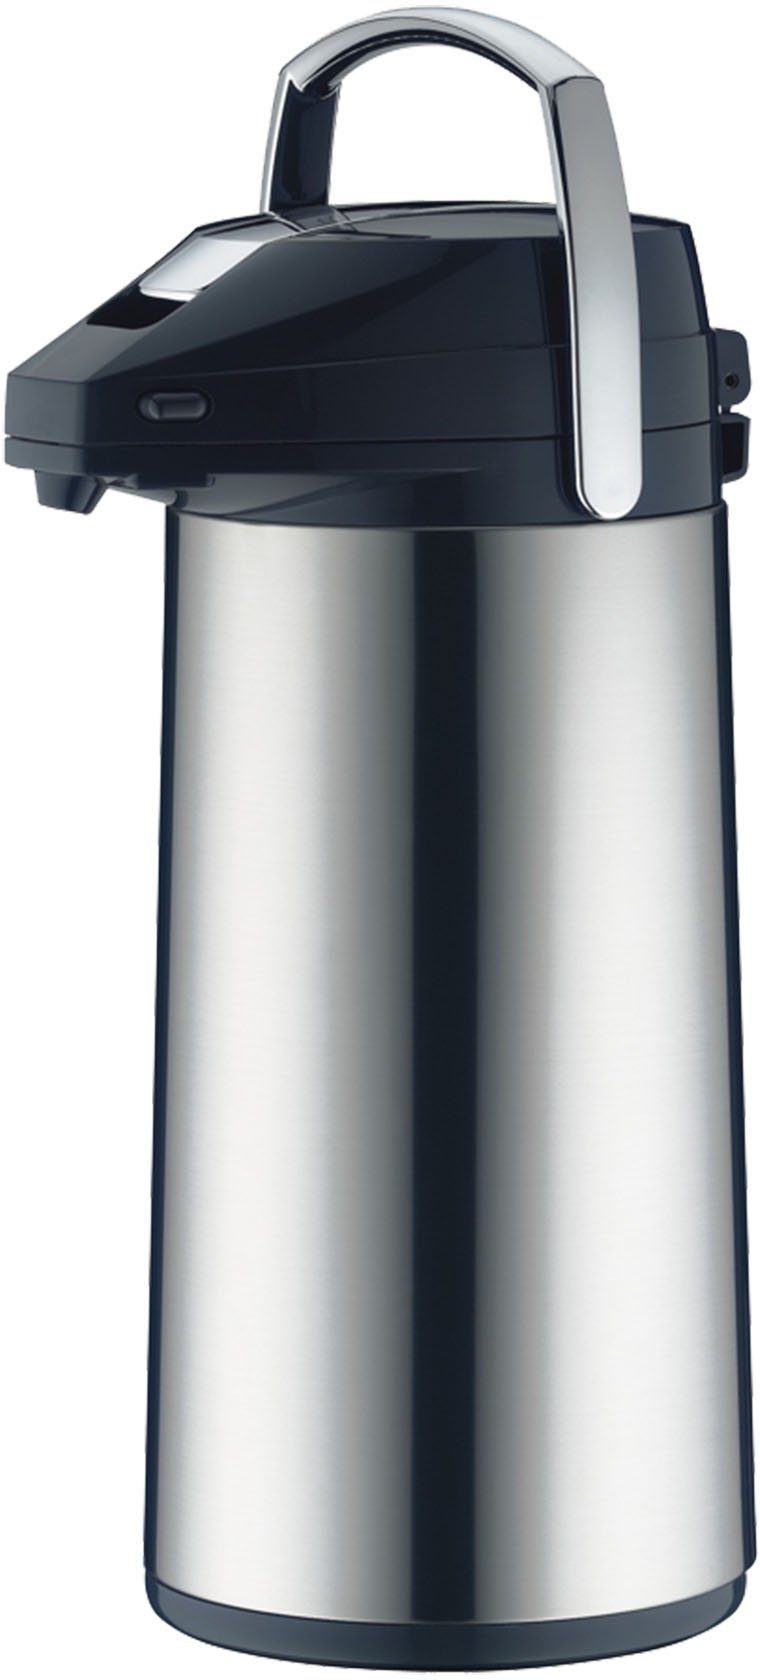 Alfi Pump-Isolierkanne, 2,2 l, Edelstahl, mit Glaseinsatz online kaufen |  OTTO